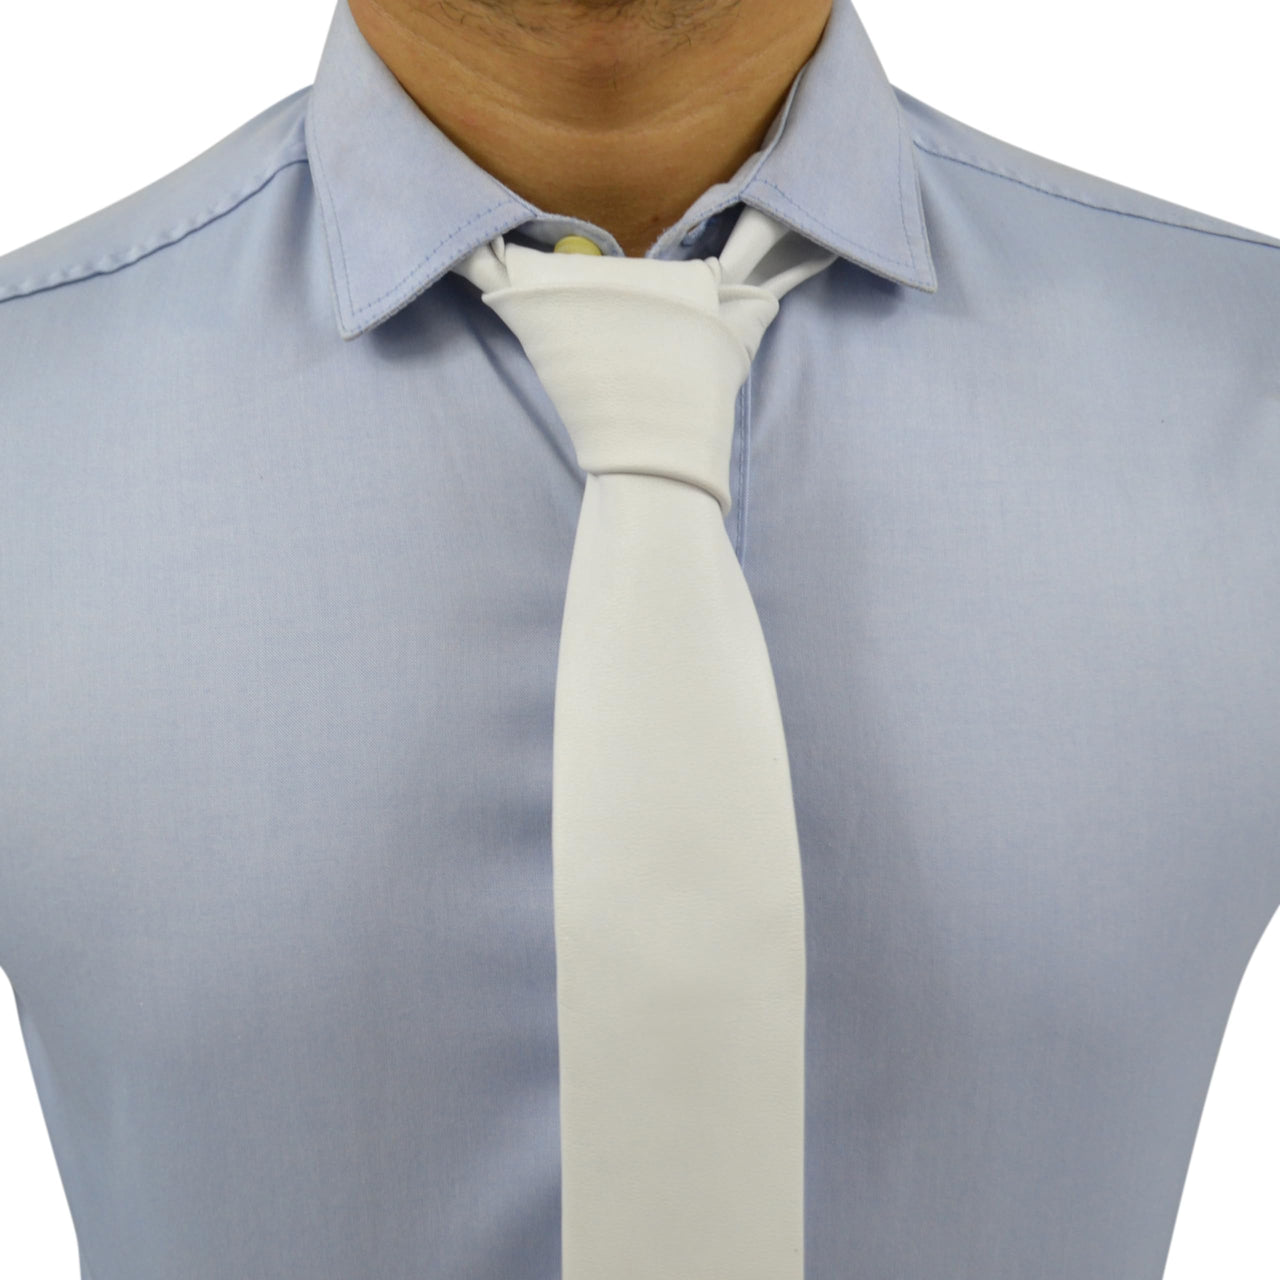 White Genuine Leather Necktie Tie